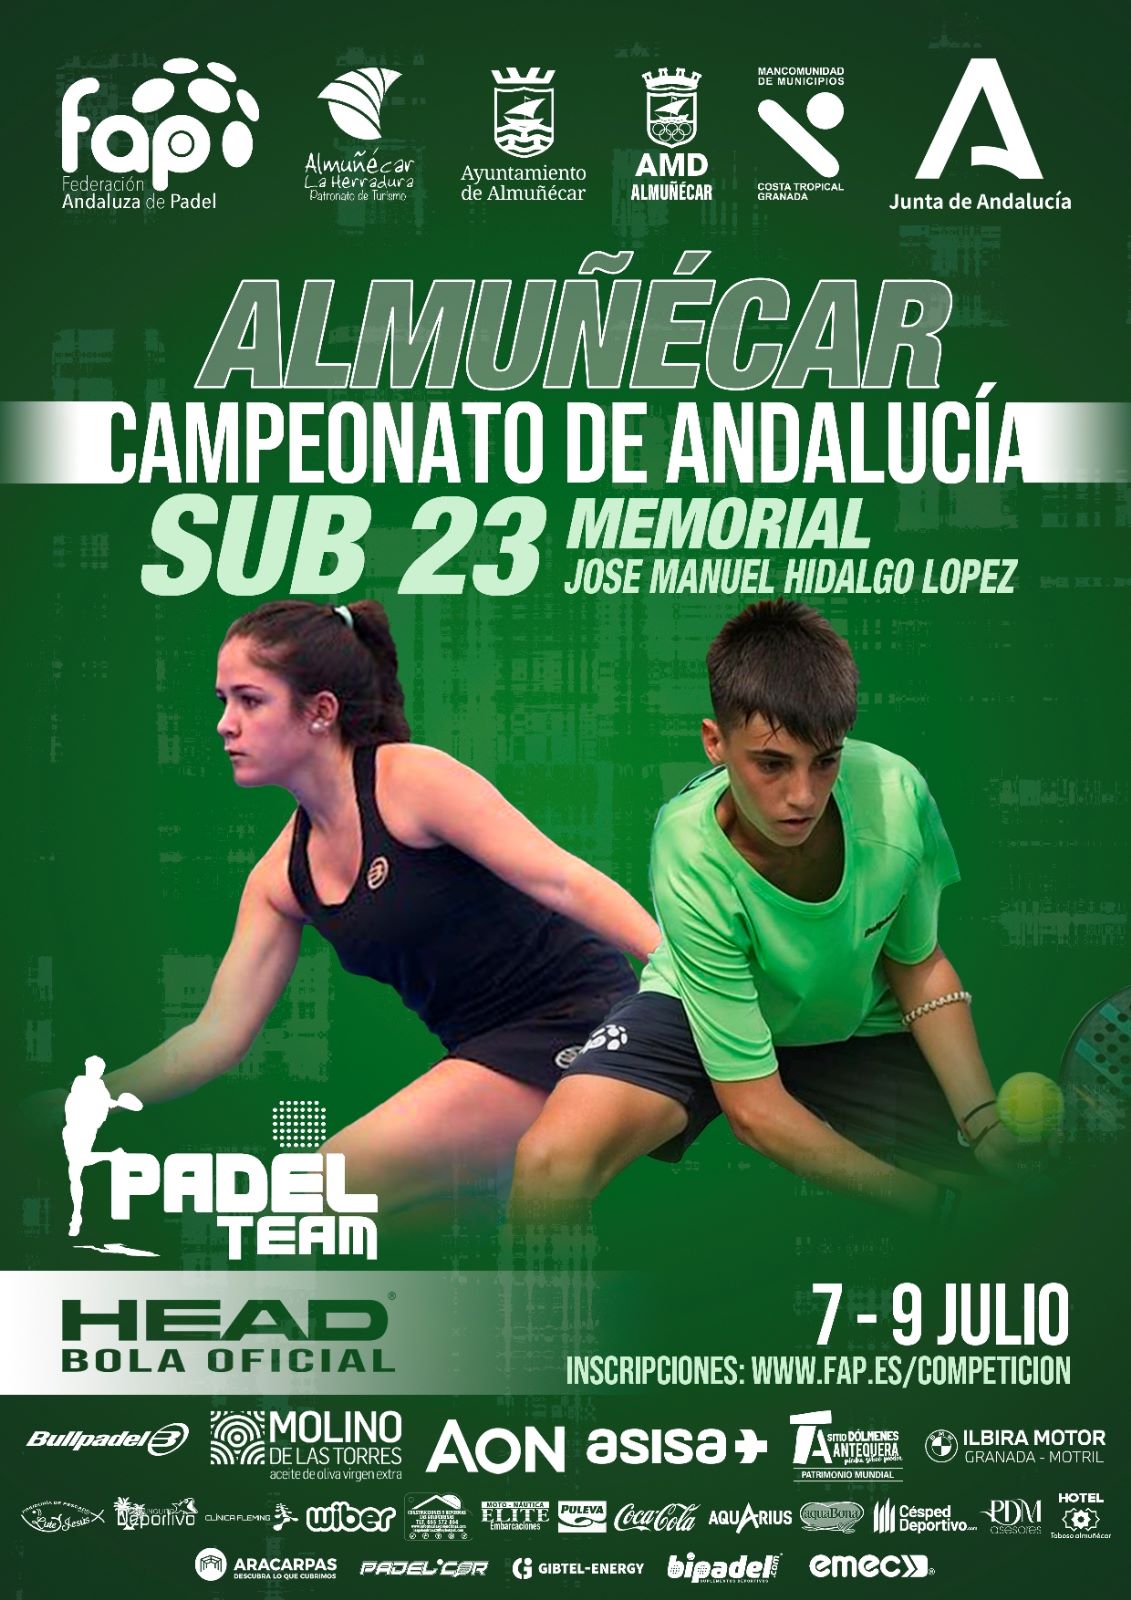 Campeonato-de-Andalucia-de-Padel-Sub-23-Almunecar-1